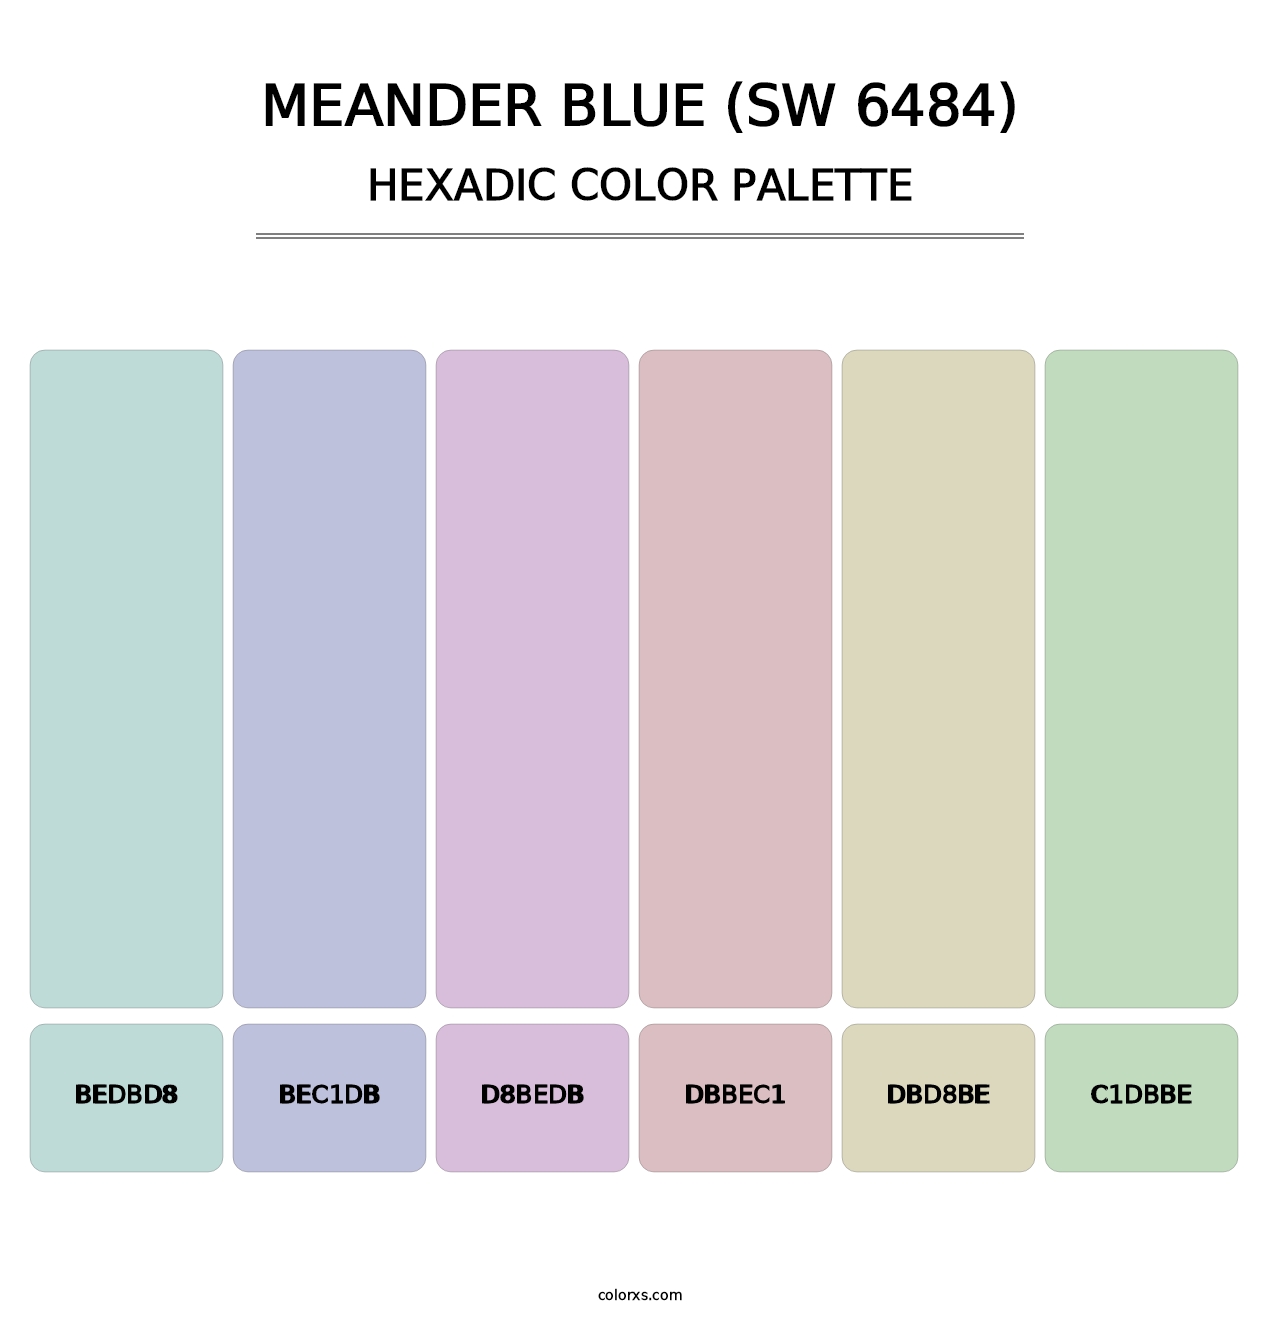 Meander Blue (SW 6484) - Hexadic Color Palette